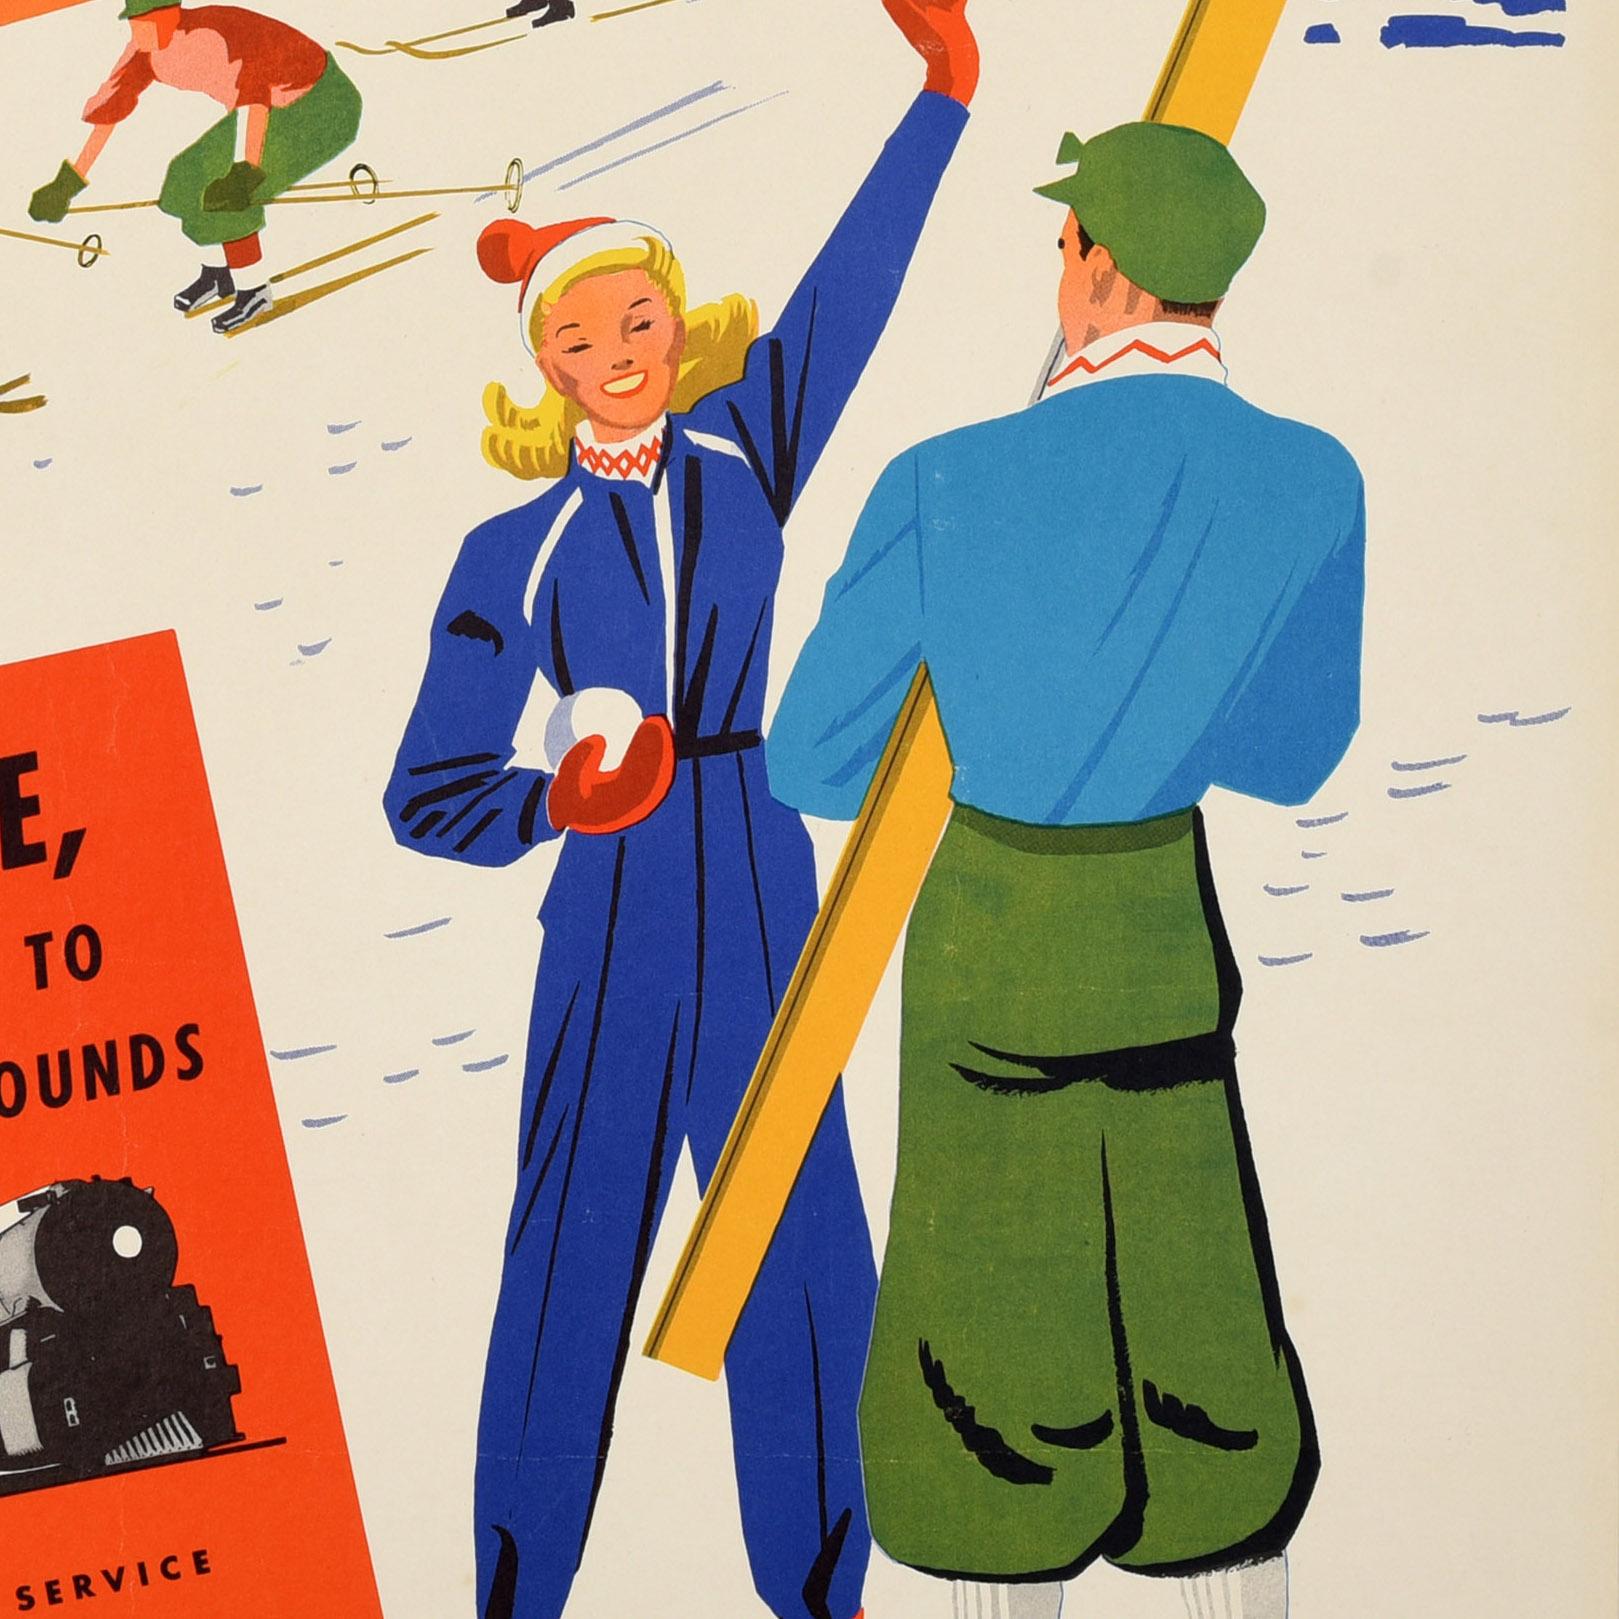 Original Vintage-Ski- und Wintersport-Reiseplakat von Southern Pacific - Play in the Snow - mit einem lustigen und farbenfrohen Design, das eine lächelnde Dame zeigt, die einen Schneeball hält und dem Betrachter zuwinkt, neben einem Mann, der ein